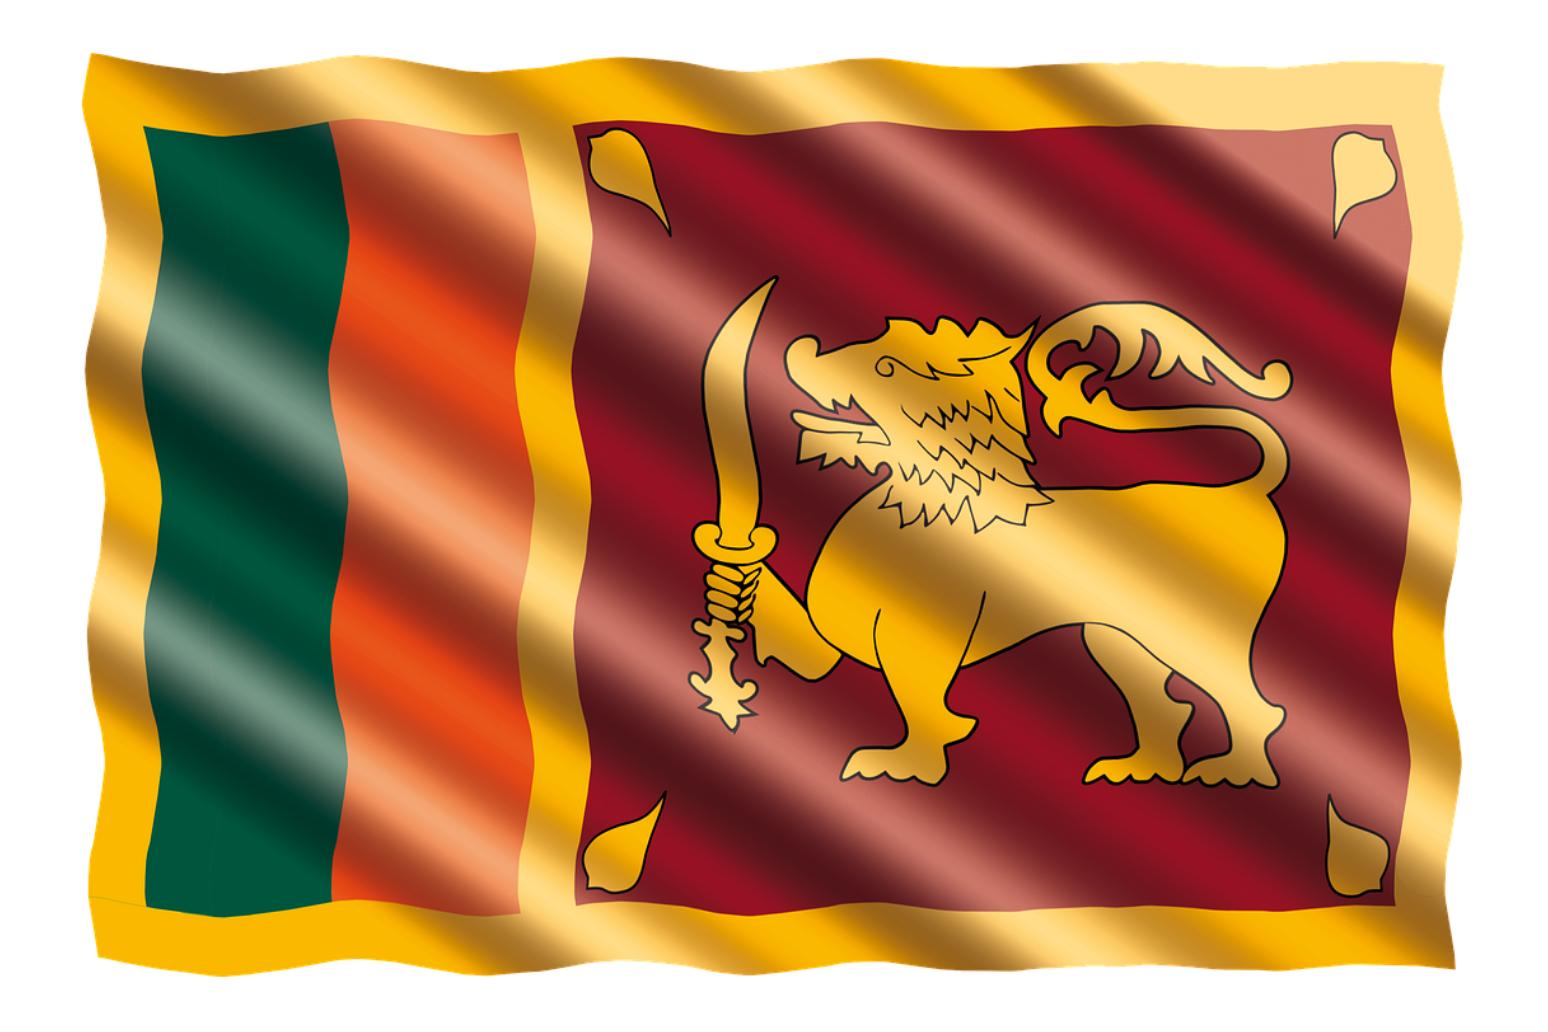 Death toll rises after Sri Lanka blasts 